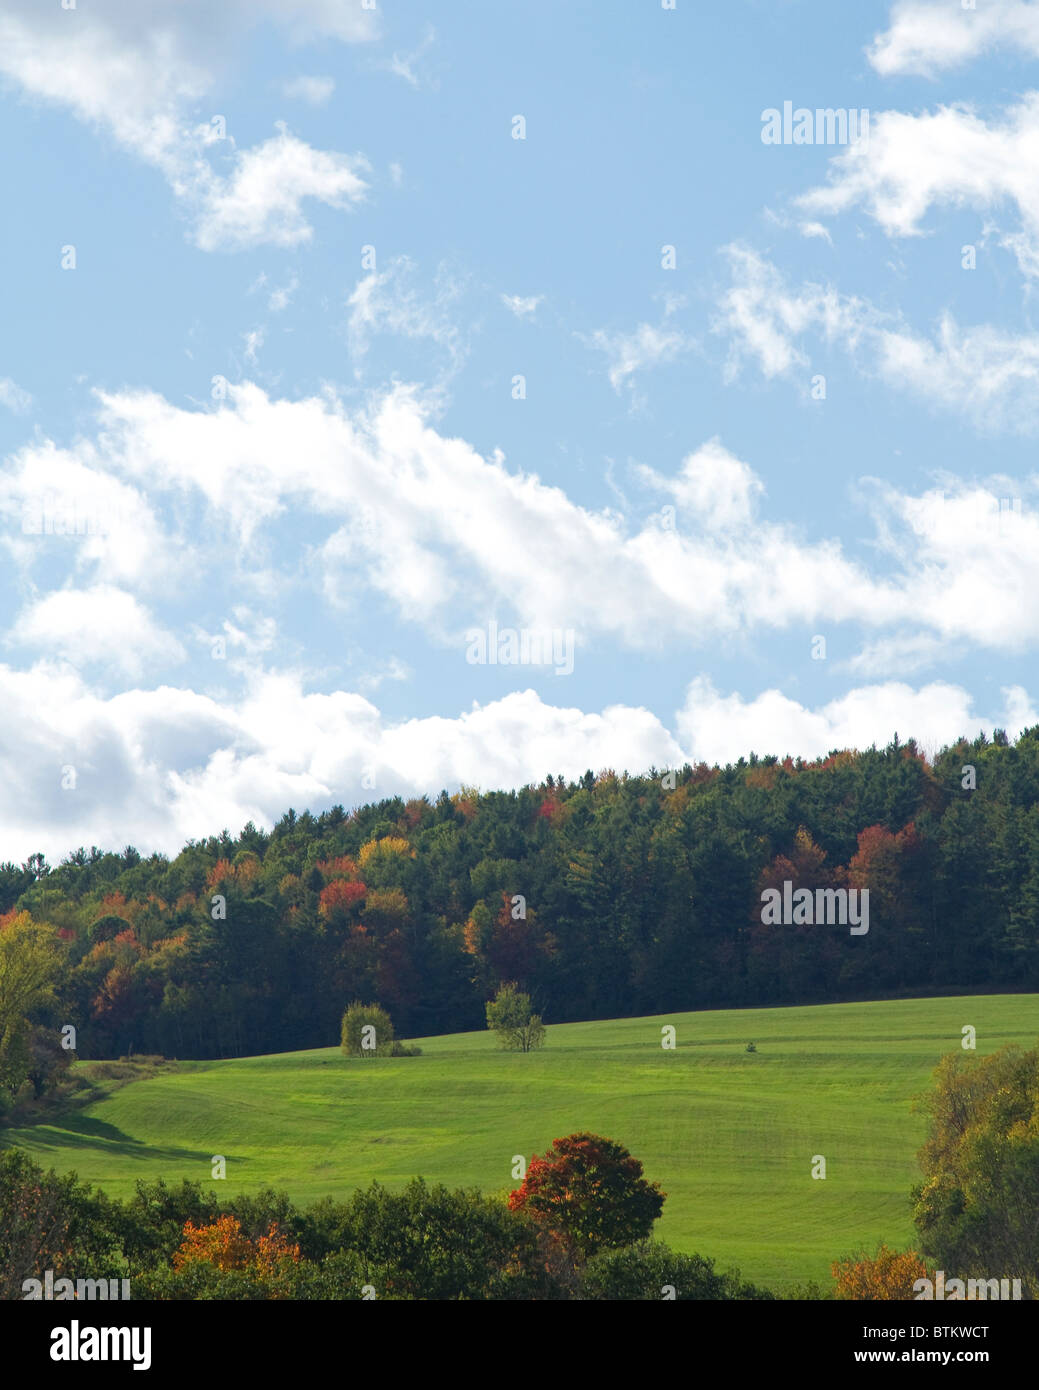 Schöne grüne Wiese einer New-hampshire Landschaft, bietet das Bunte Bäume und Blätter des Herbstes, fallen. Stockfoto